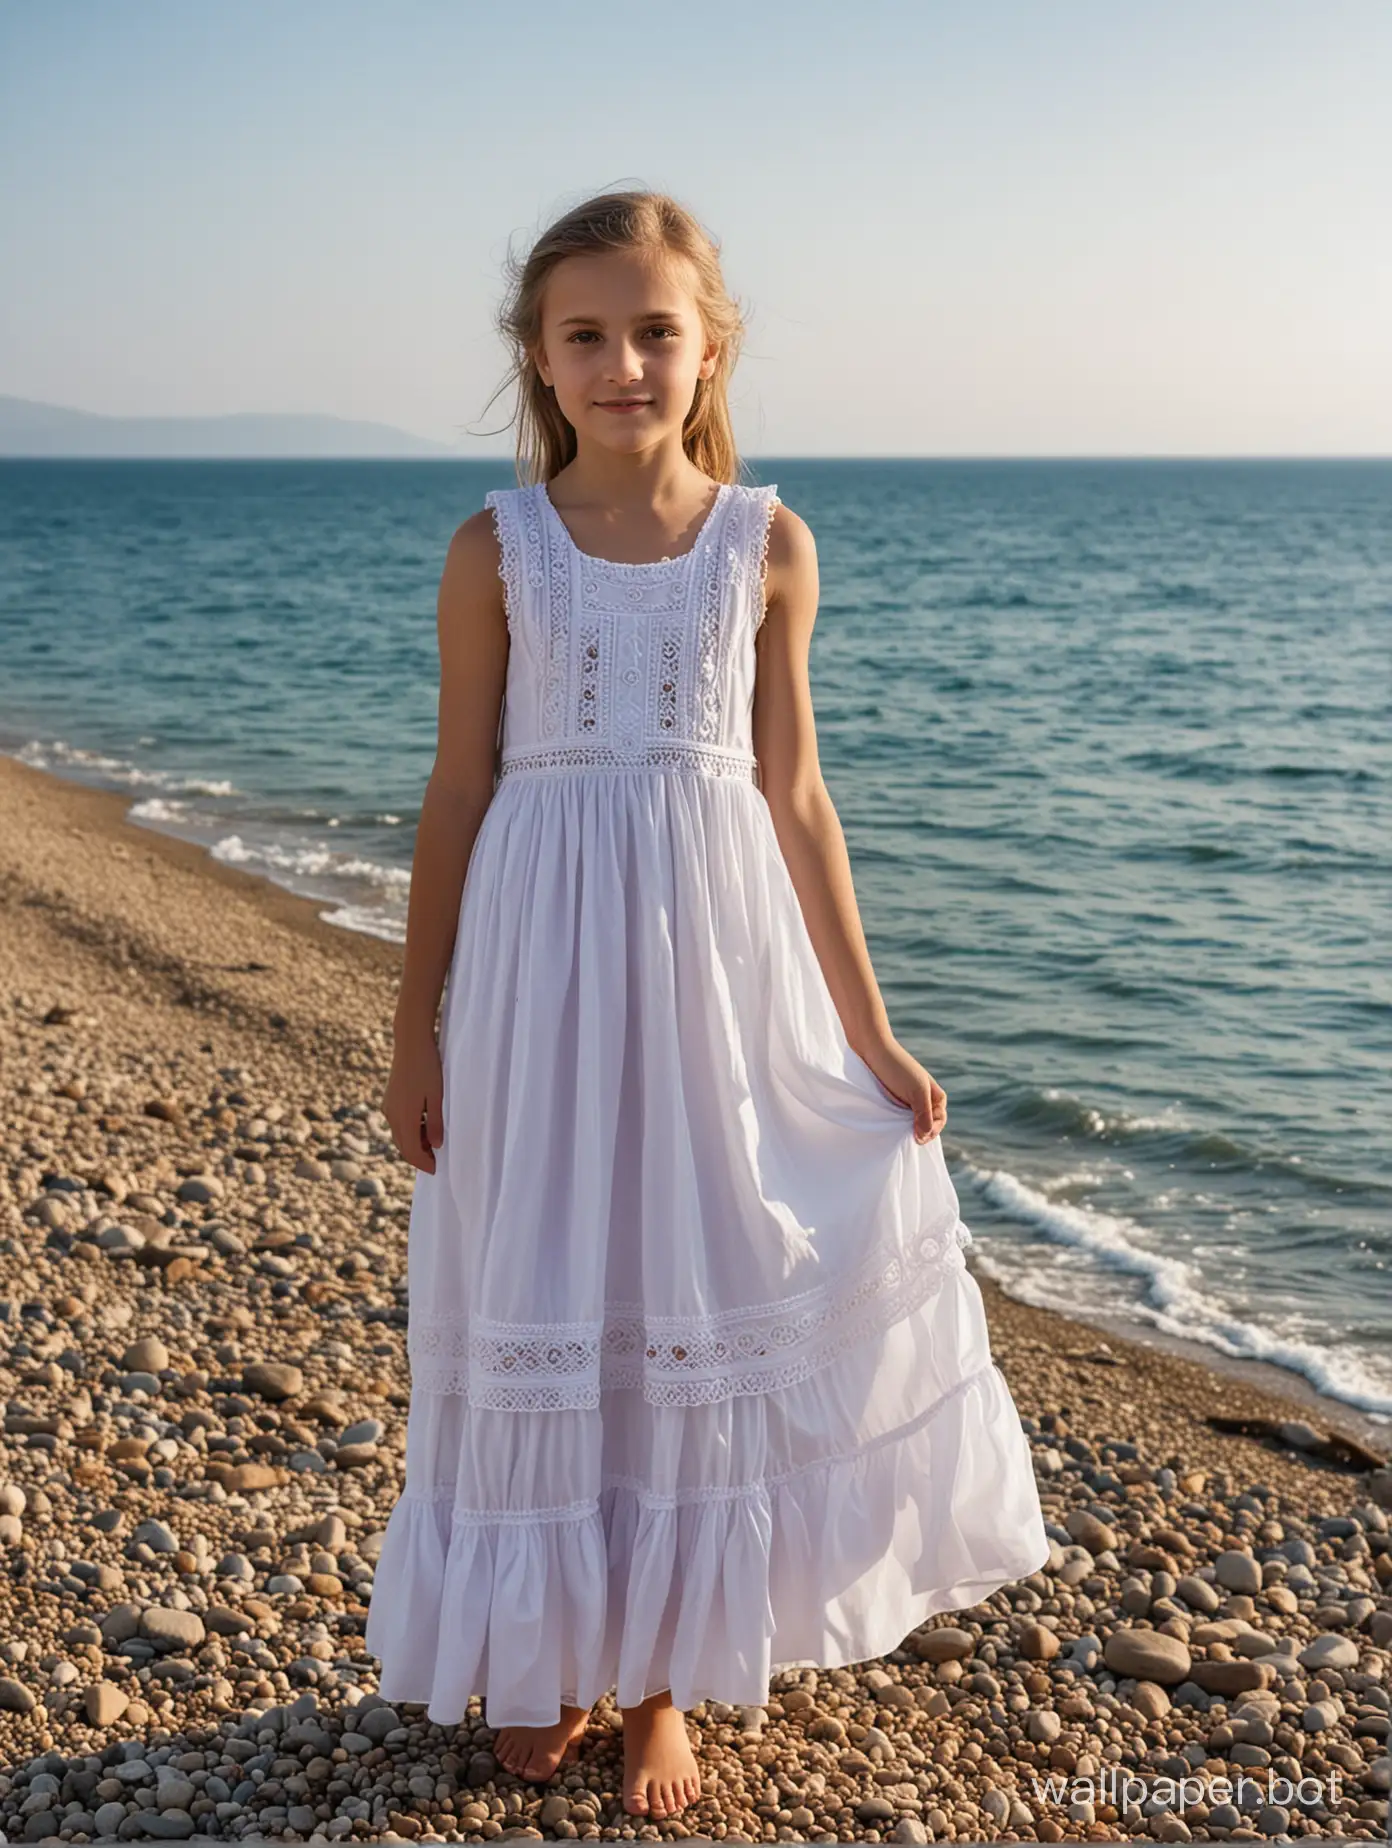 Seaside-Portrait-of-a-10YearOld-Girl-in-Elegant-Dress